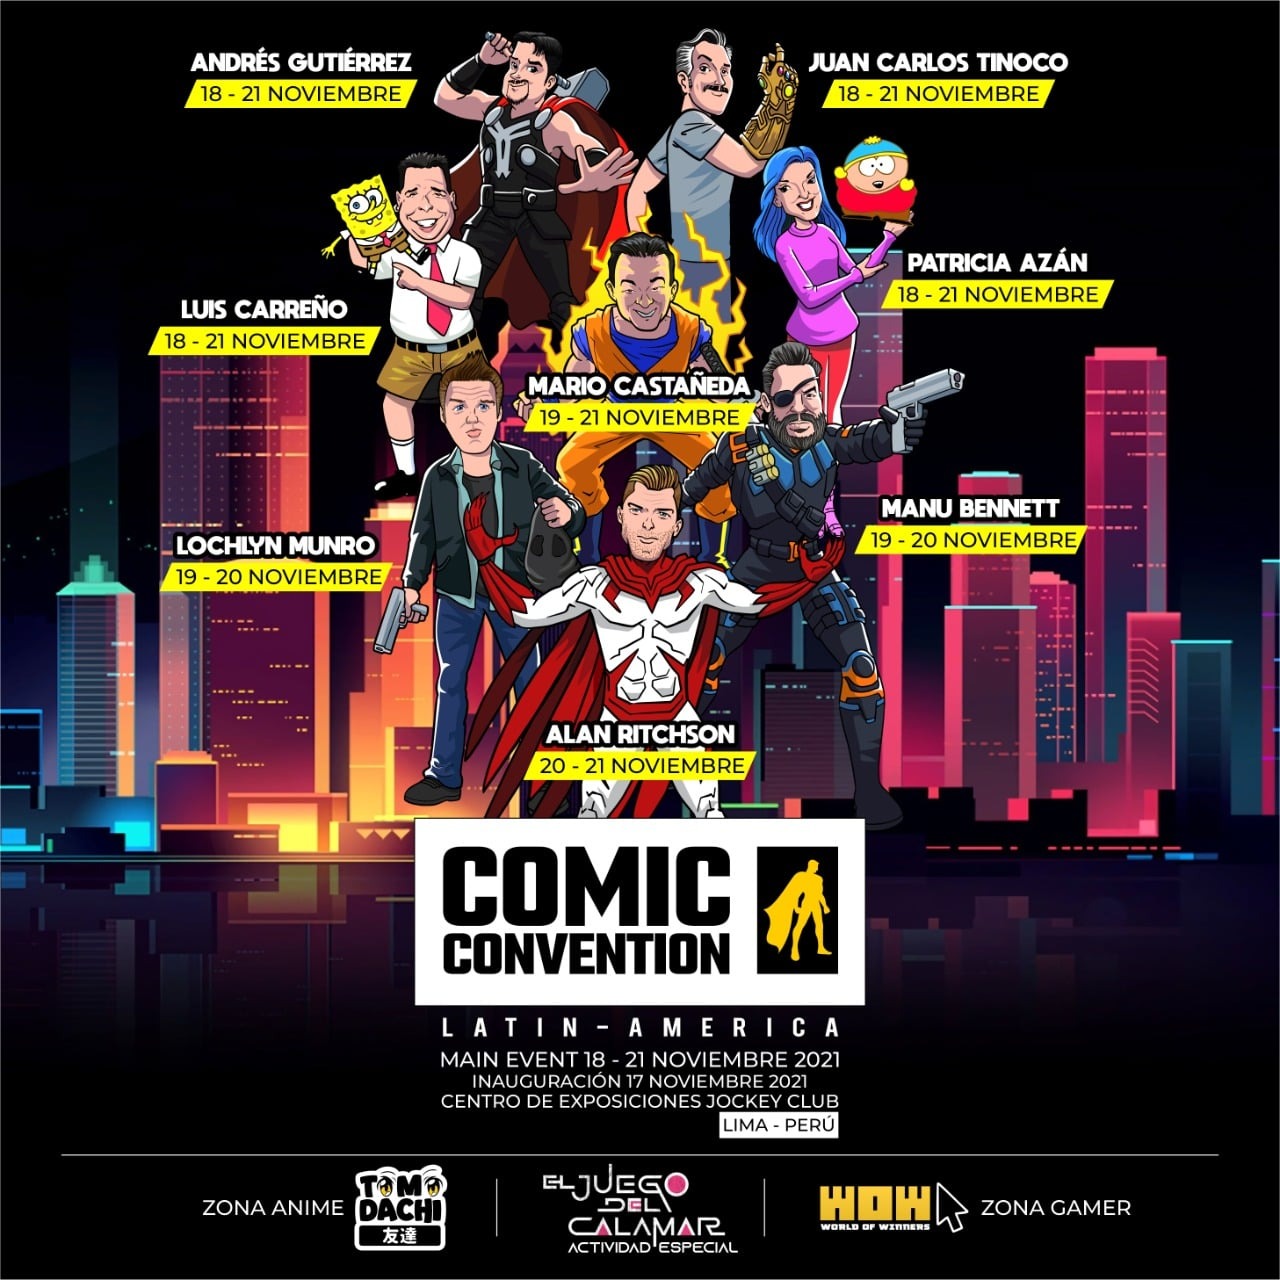 Conoce a los artistas invitados a la Comic Convention Latin America